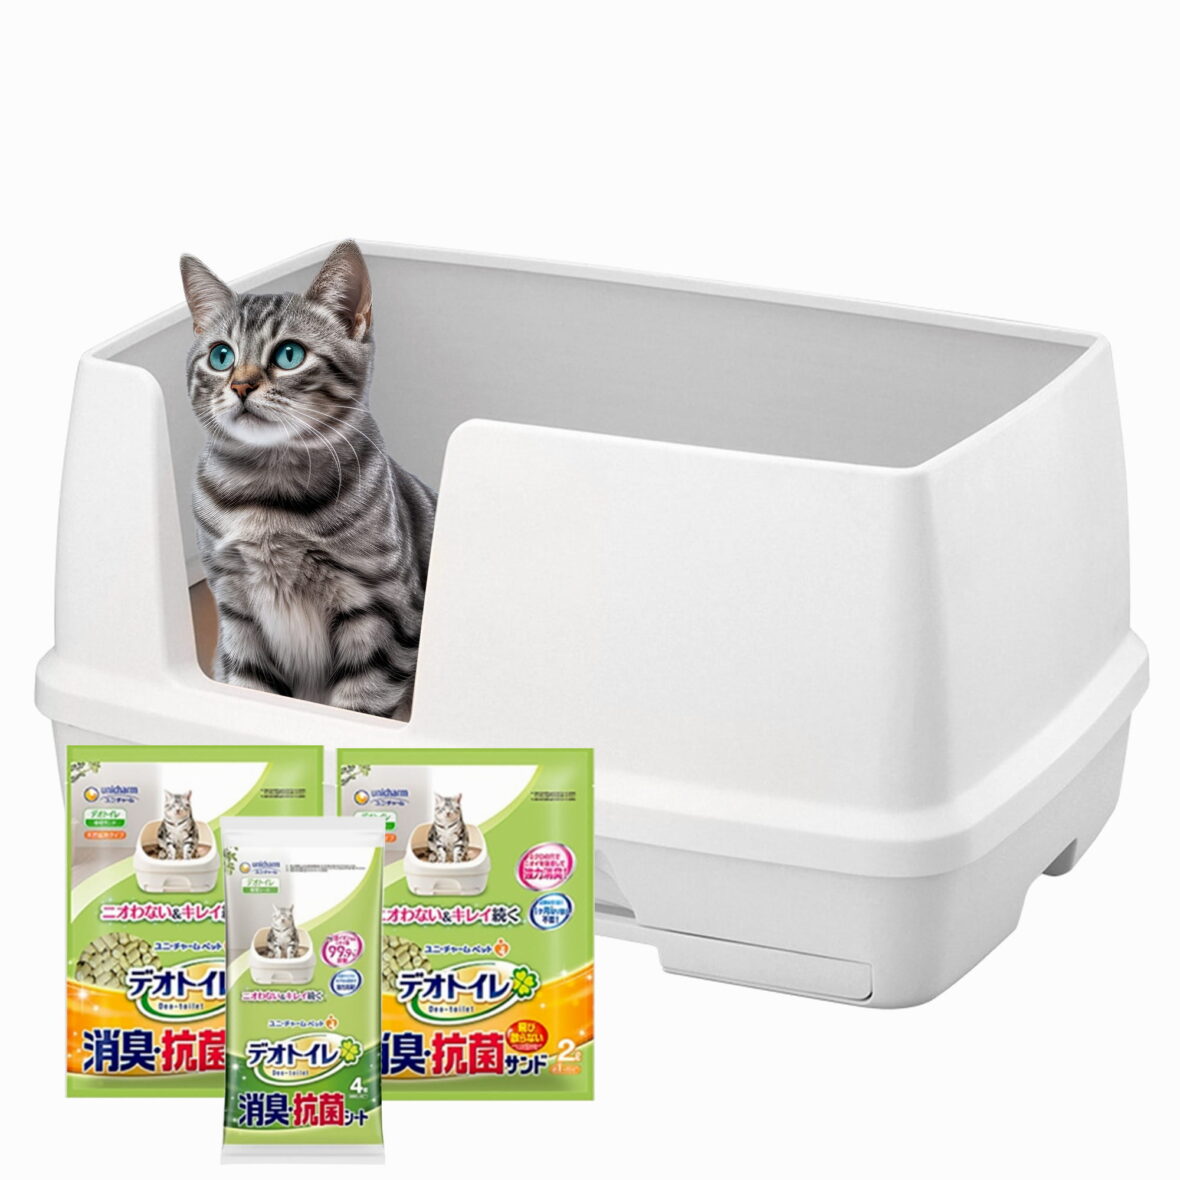 XL 2 pakopų kačių tualetas (dėžė + 2 X 1,6 kg granulės + 4 sugeriantys įklotai) XL Tidy cats Breeze litter box BIG Originali versija iš Japonijos. Japoniškas kačių tualetas